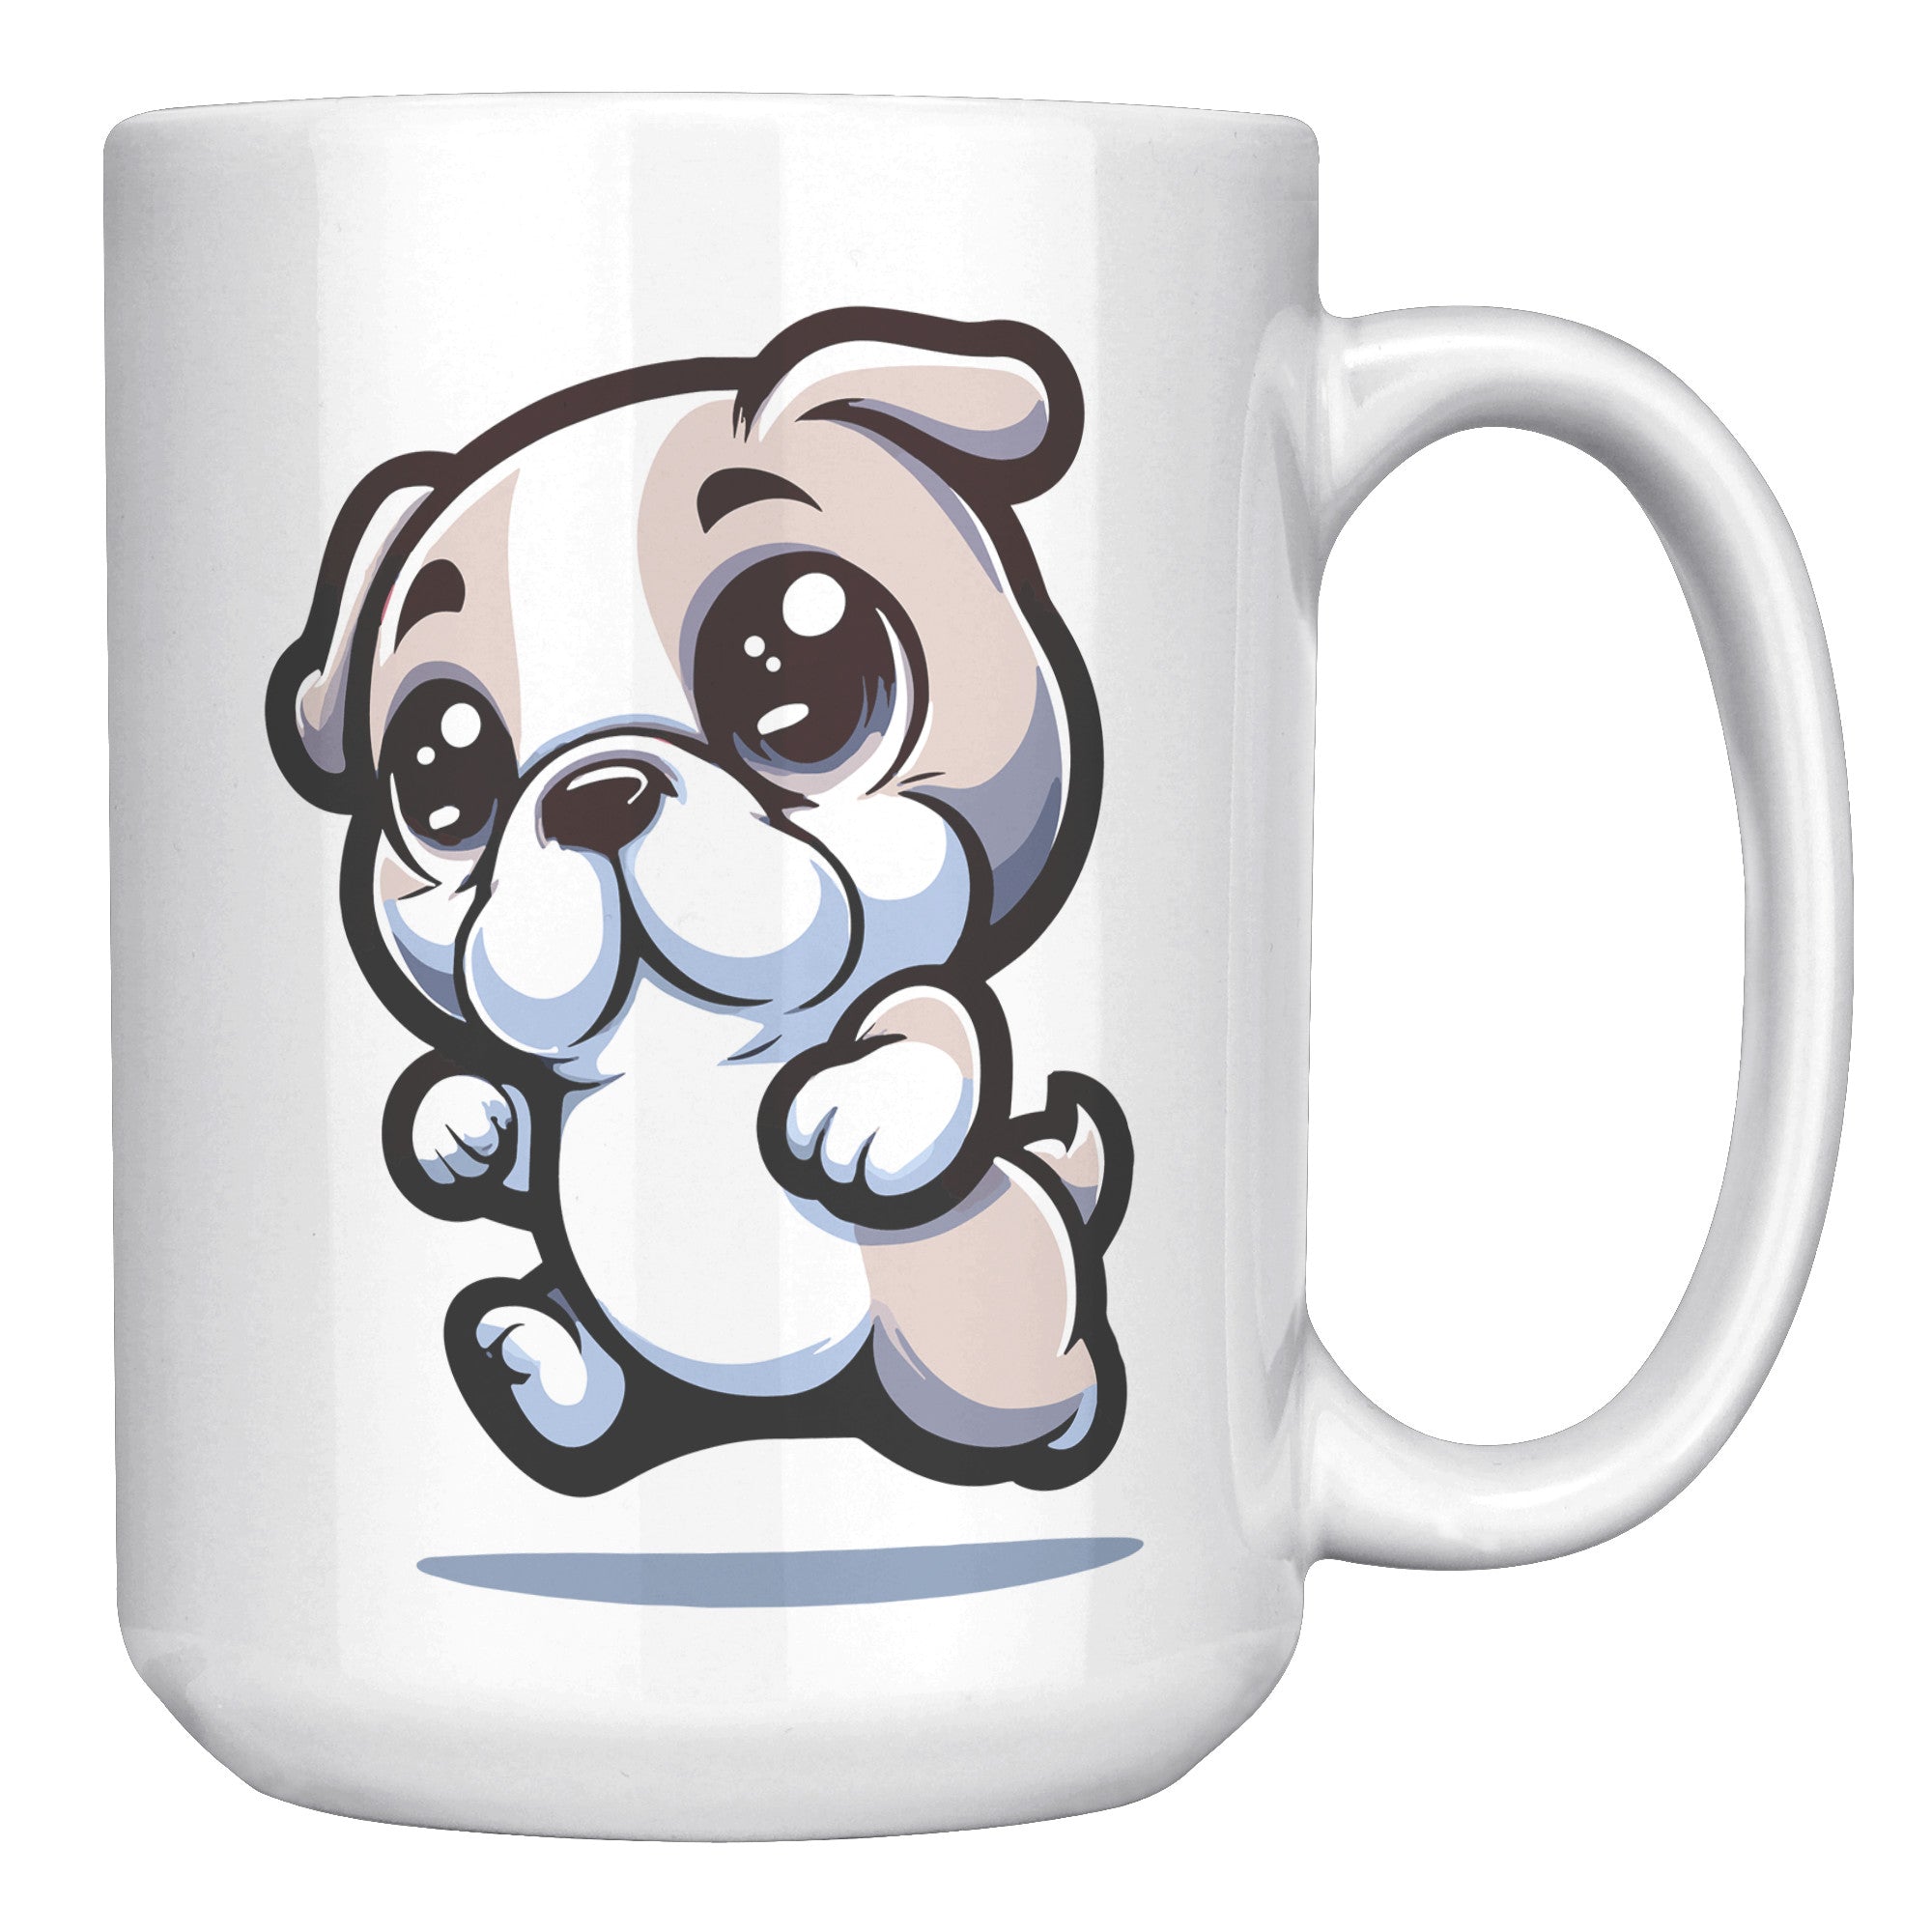 15oz French Bulldog Cartoon Coffee Mug - Frenchie Lover Coffee Mug - Perfect Gift for French Bulldog Owners - Adorable Bat-Eared Dog Coffee Mug - L1